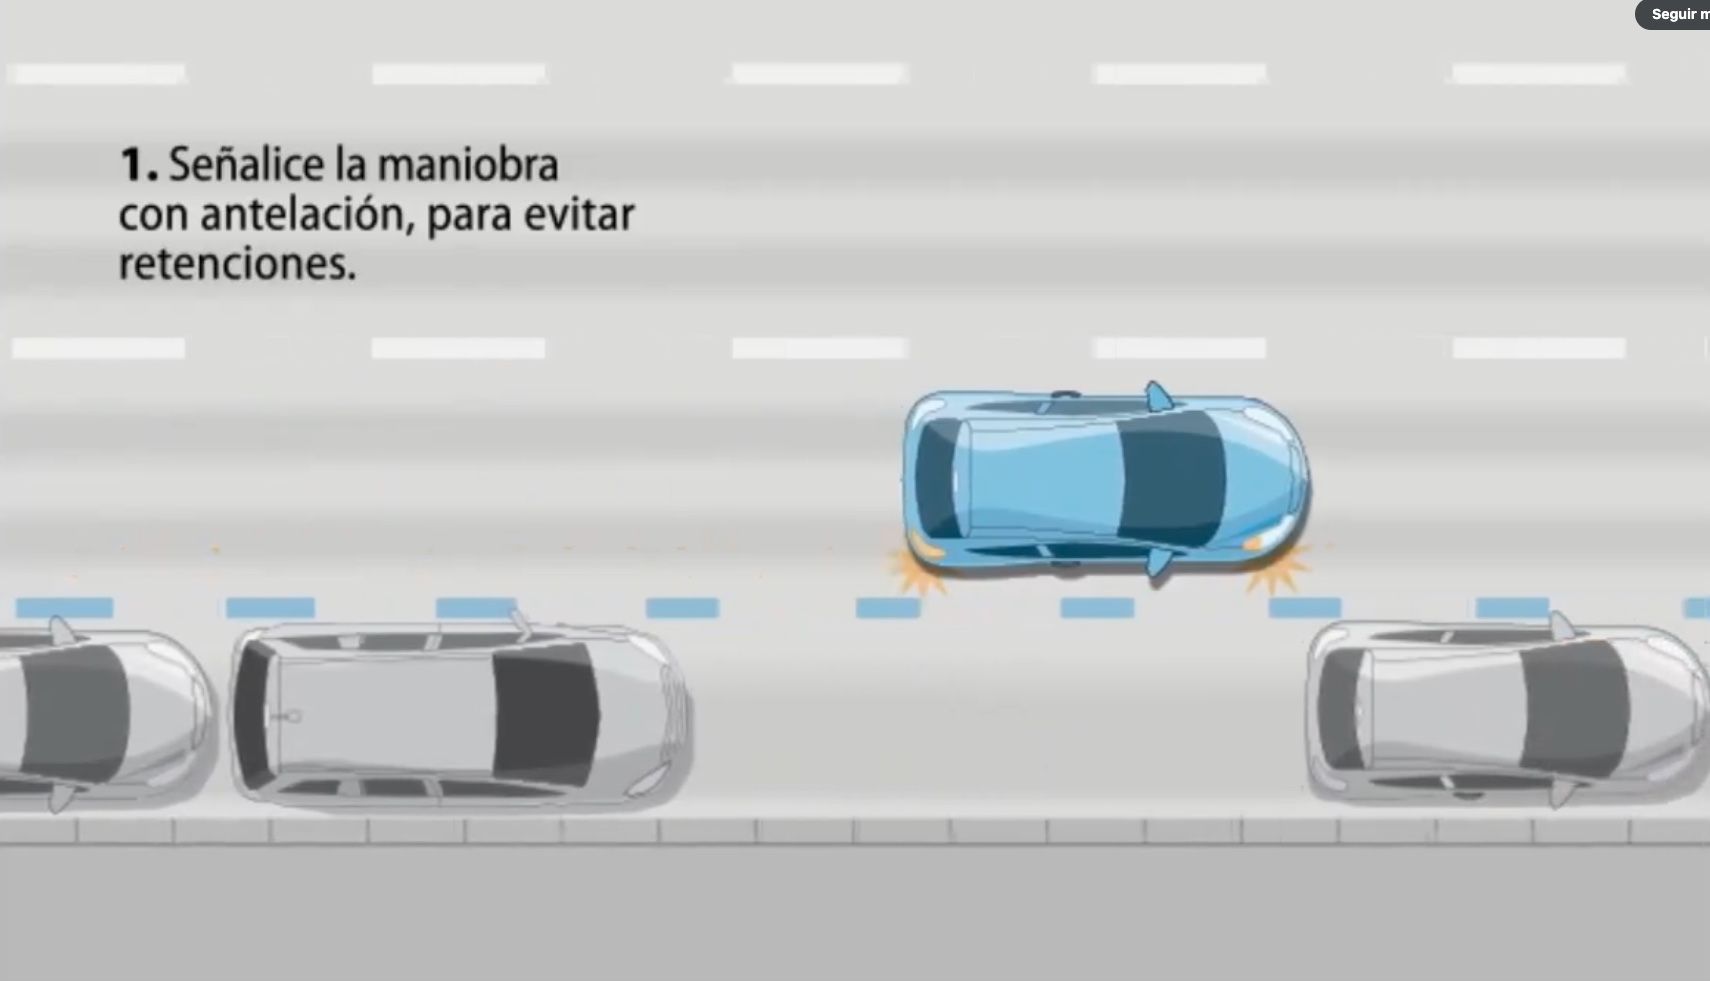 ¿Problemas para aparcar en línea? La DGT explica en un vídeo cómo hacer el "aparcamiento perfecto"